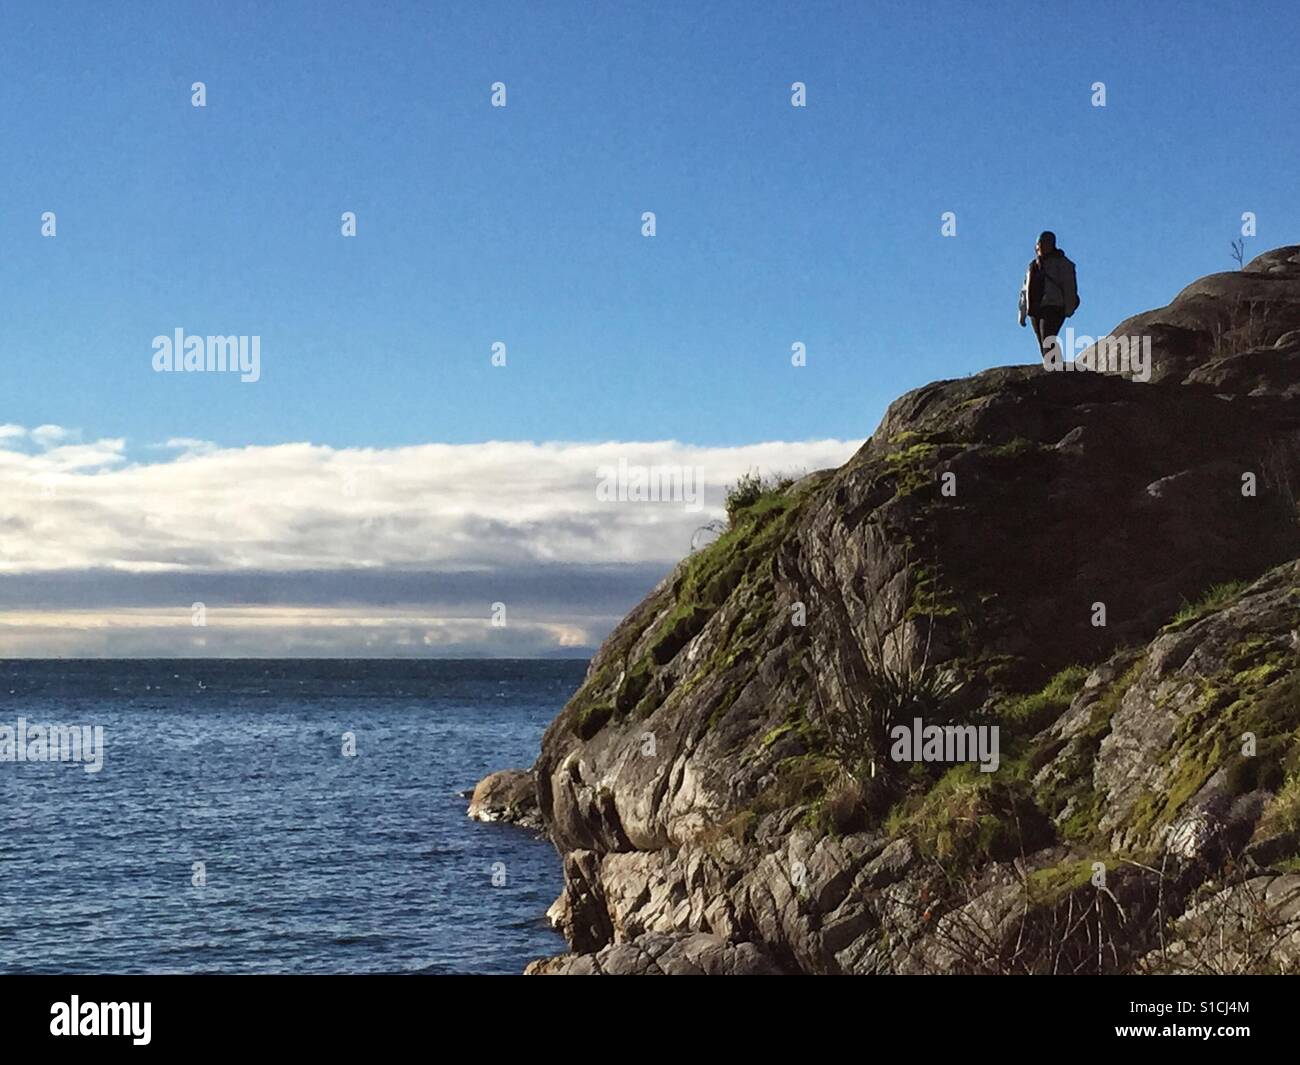 Einsame Person am Rand auf einer Klippe direkt am Meer, Blick auf die Meereslandschaft. Stockfoto